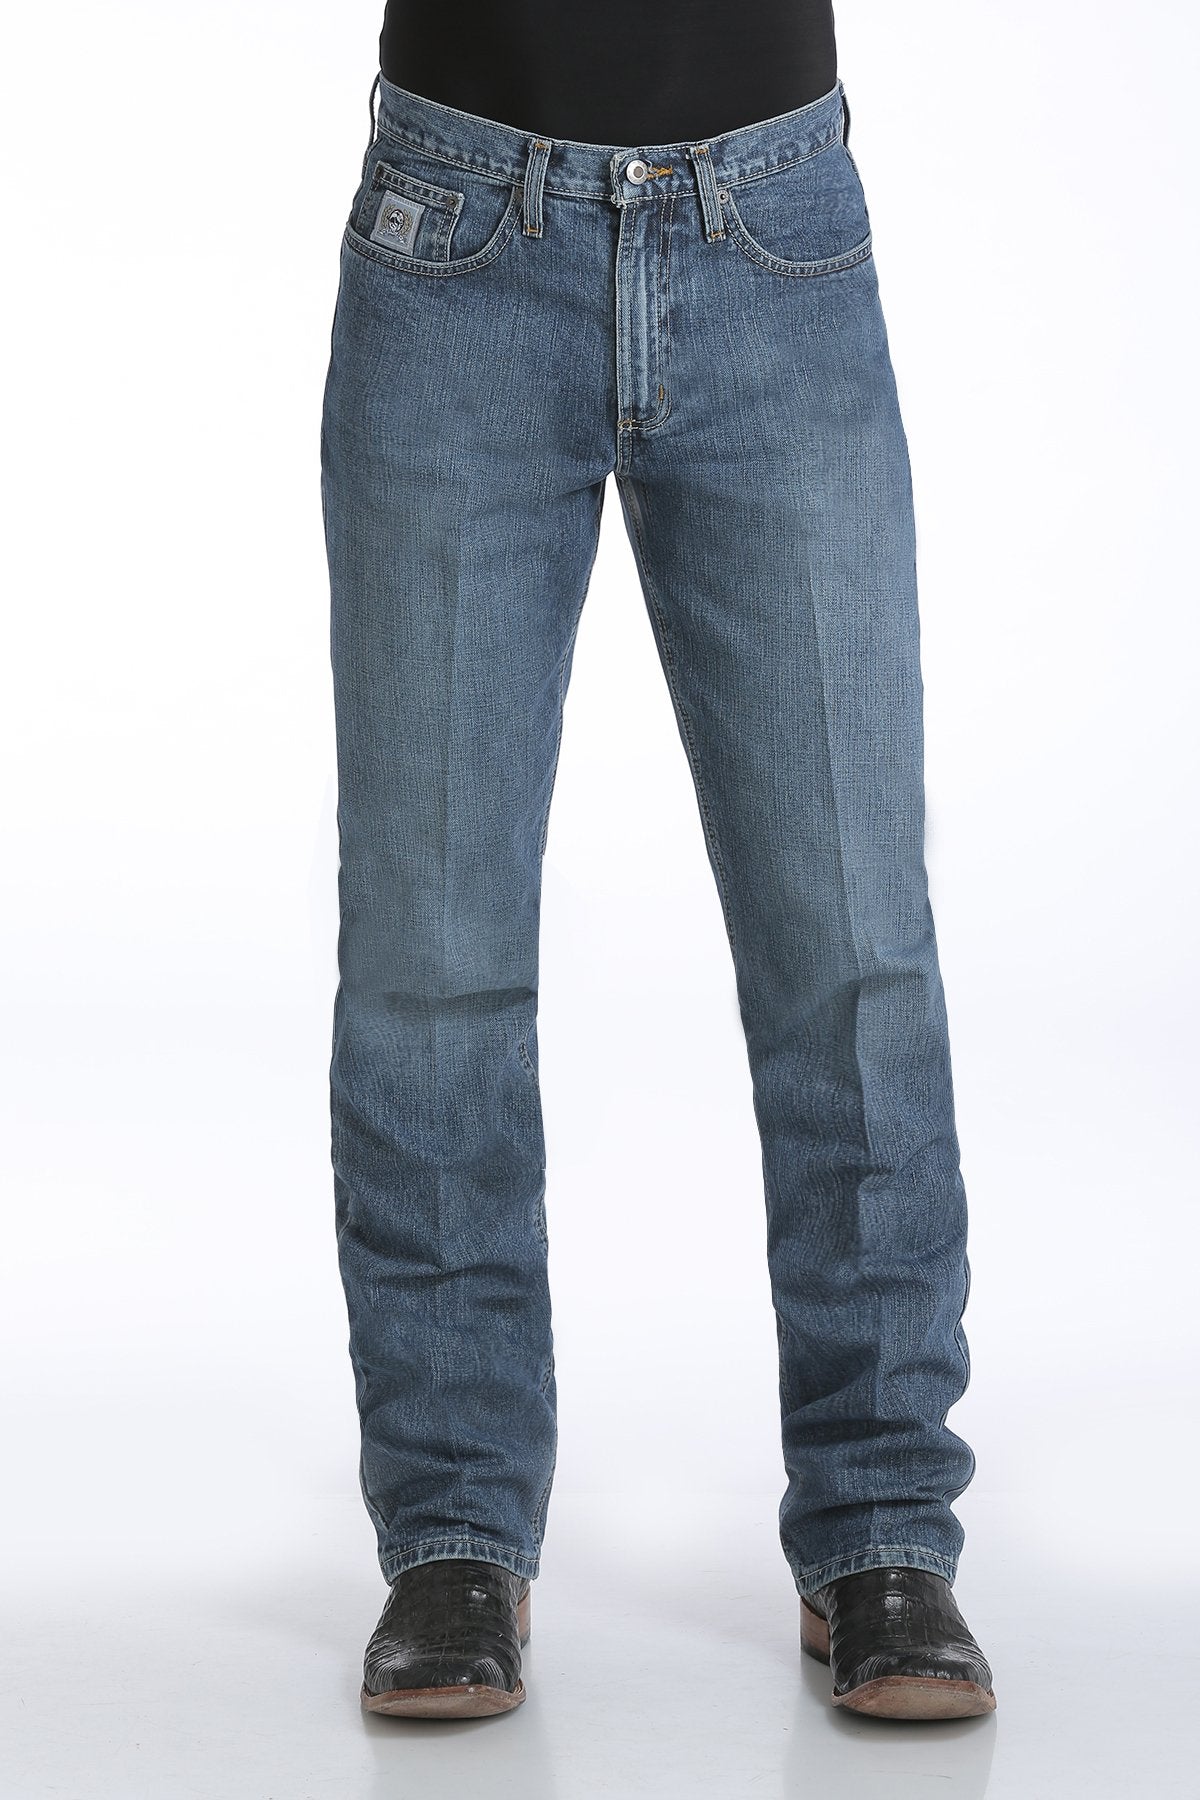 Cinch Mens Silver Label Slim Fit Jeans 32 Inch Leg (Medium Stonewash)